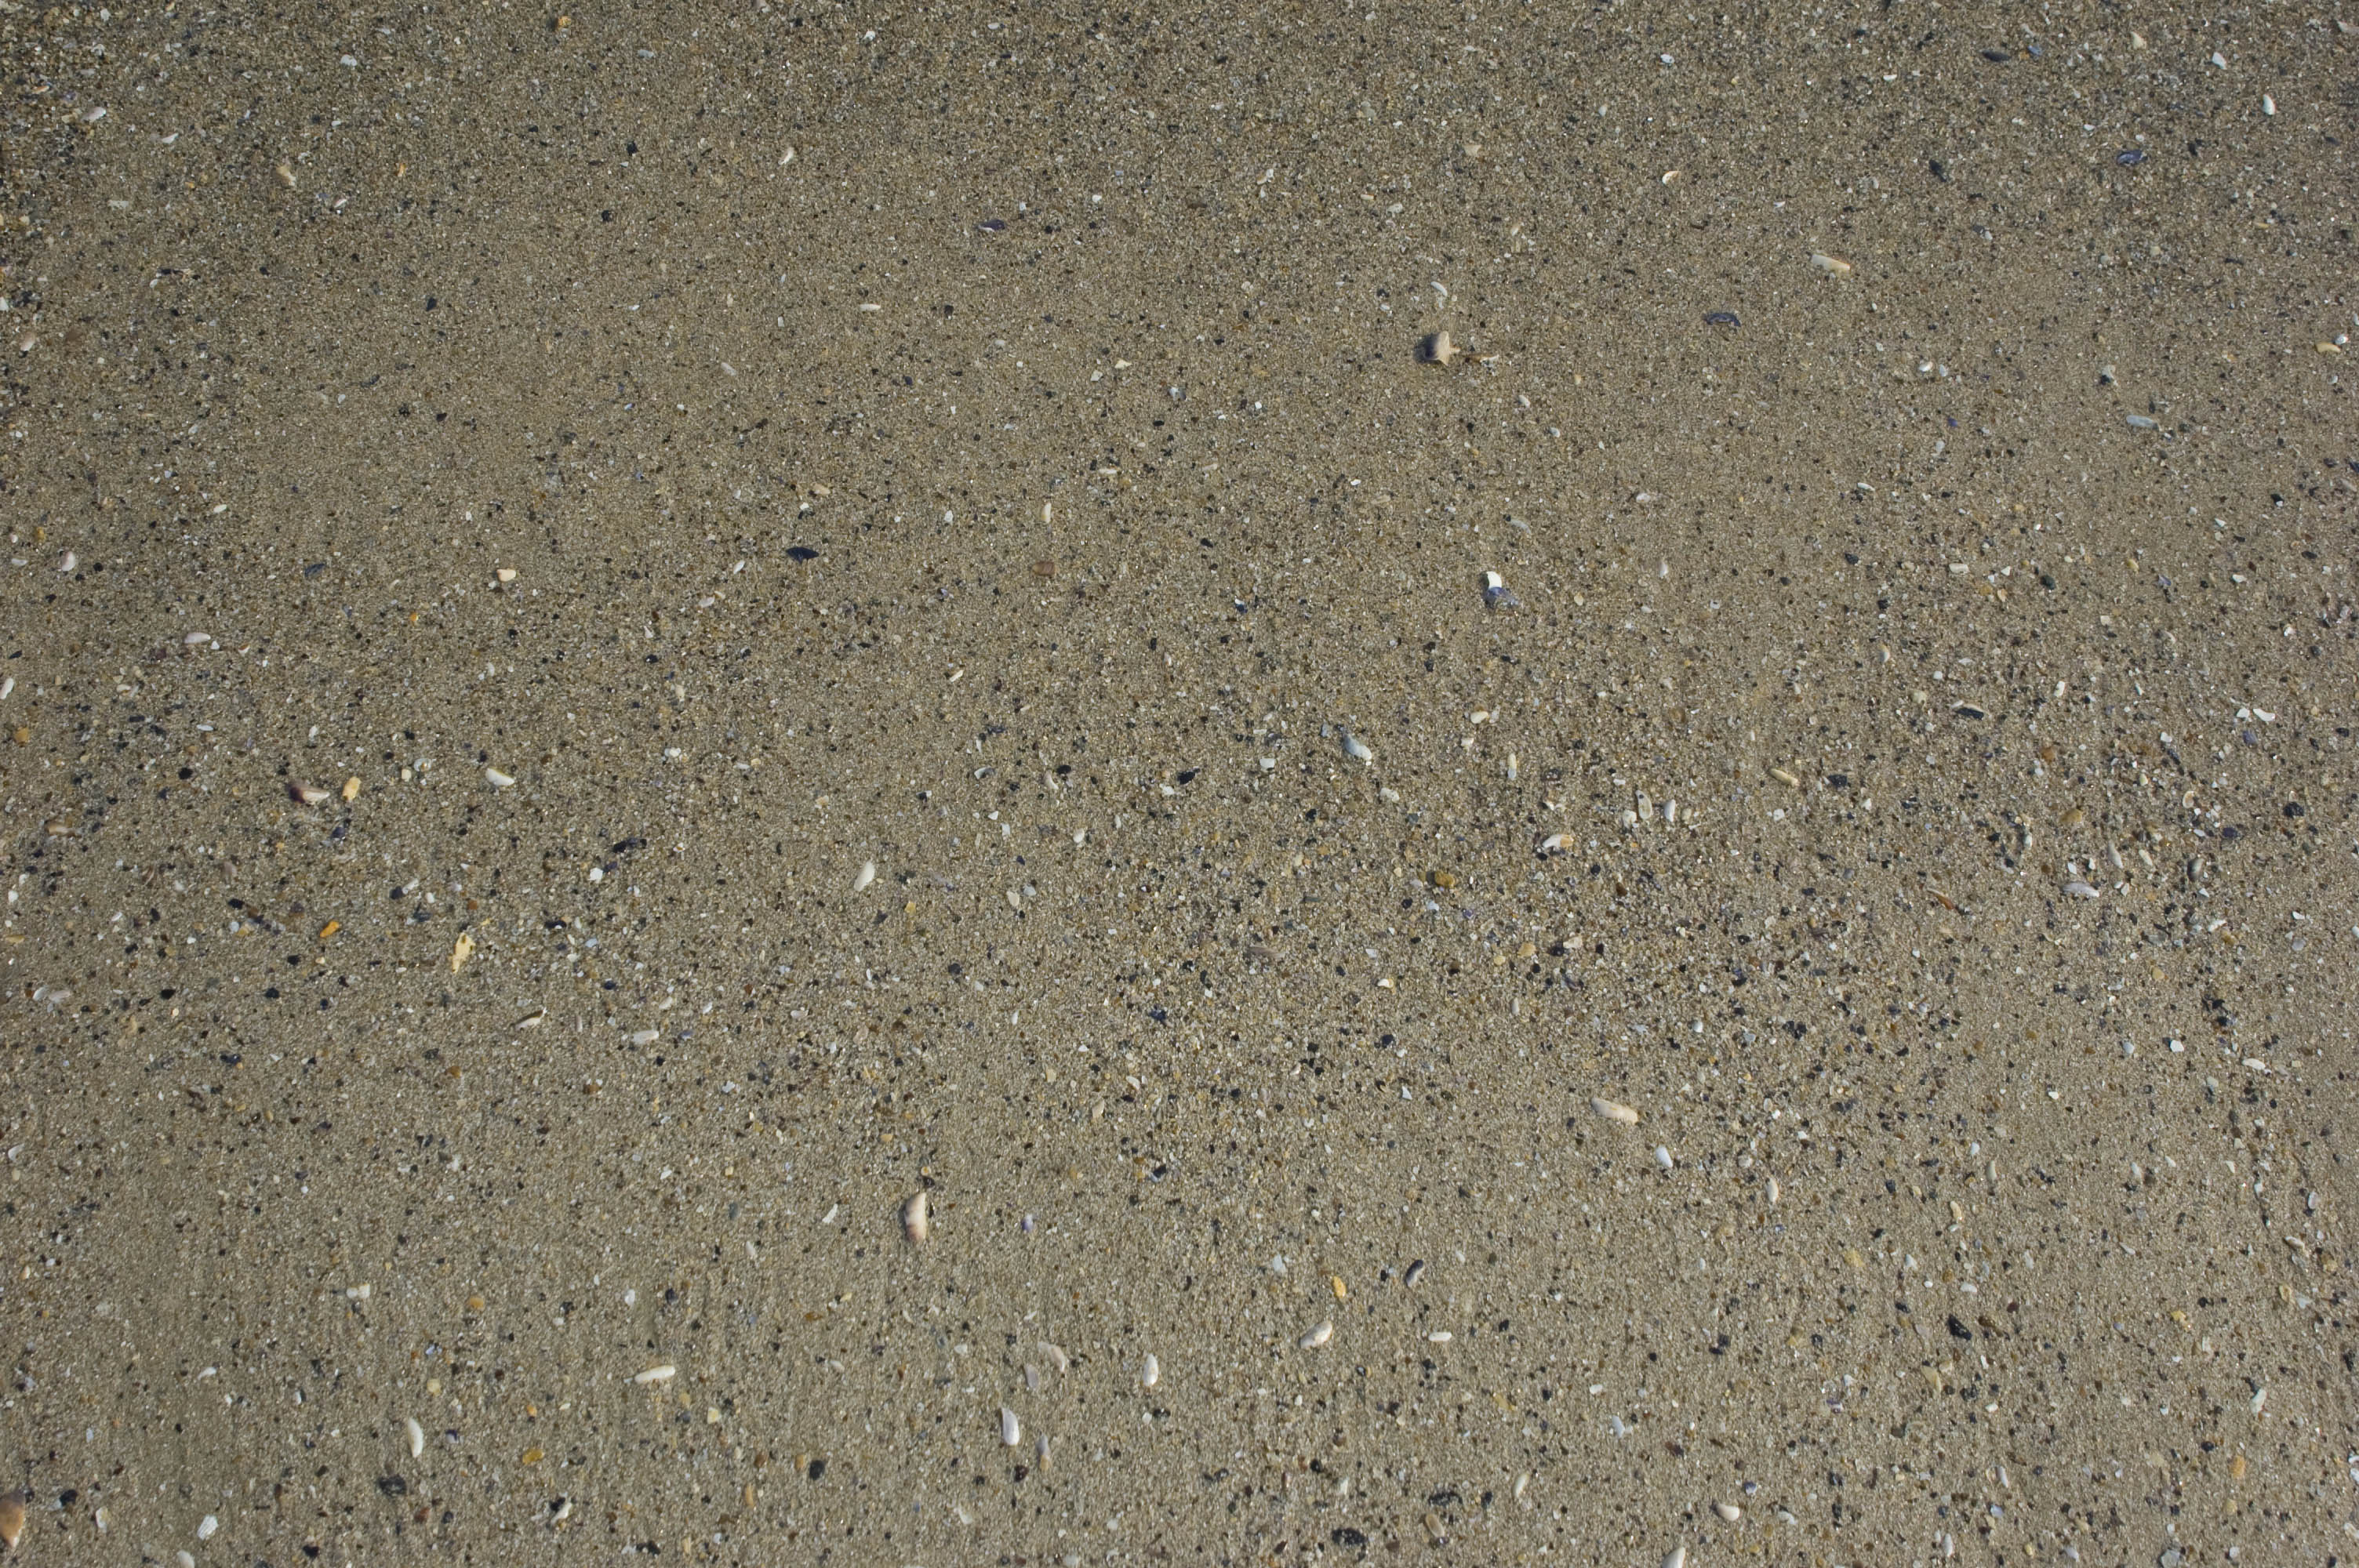 Wet sand texture download free textures